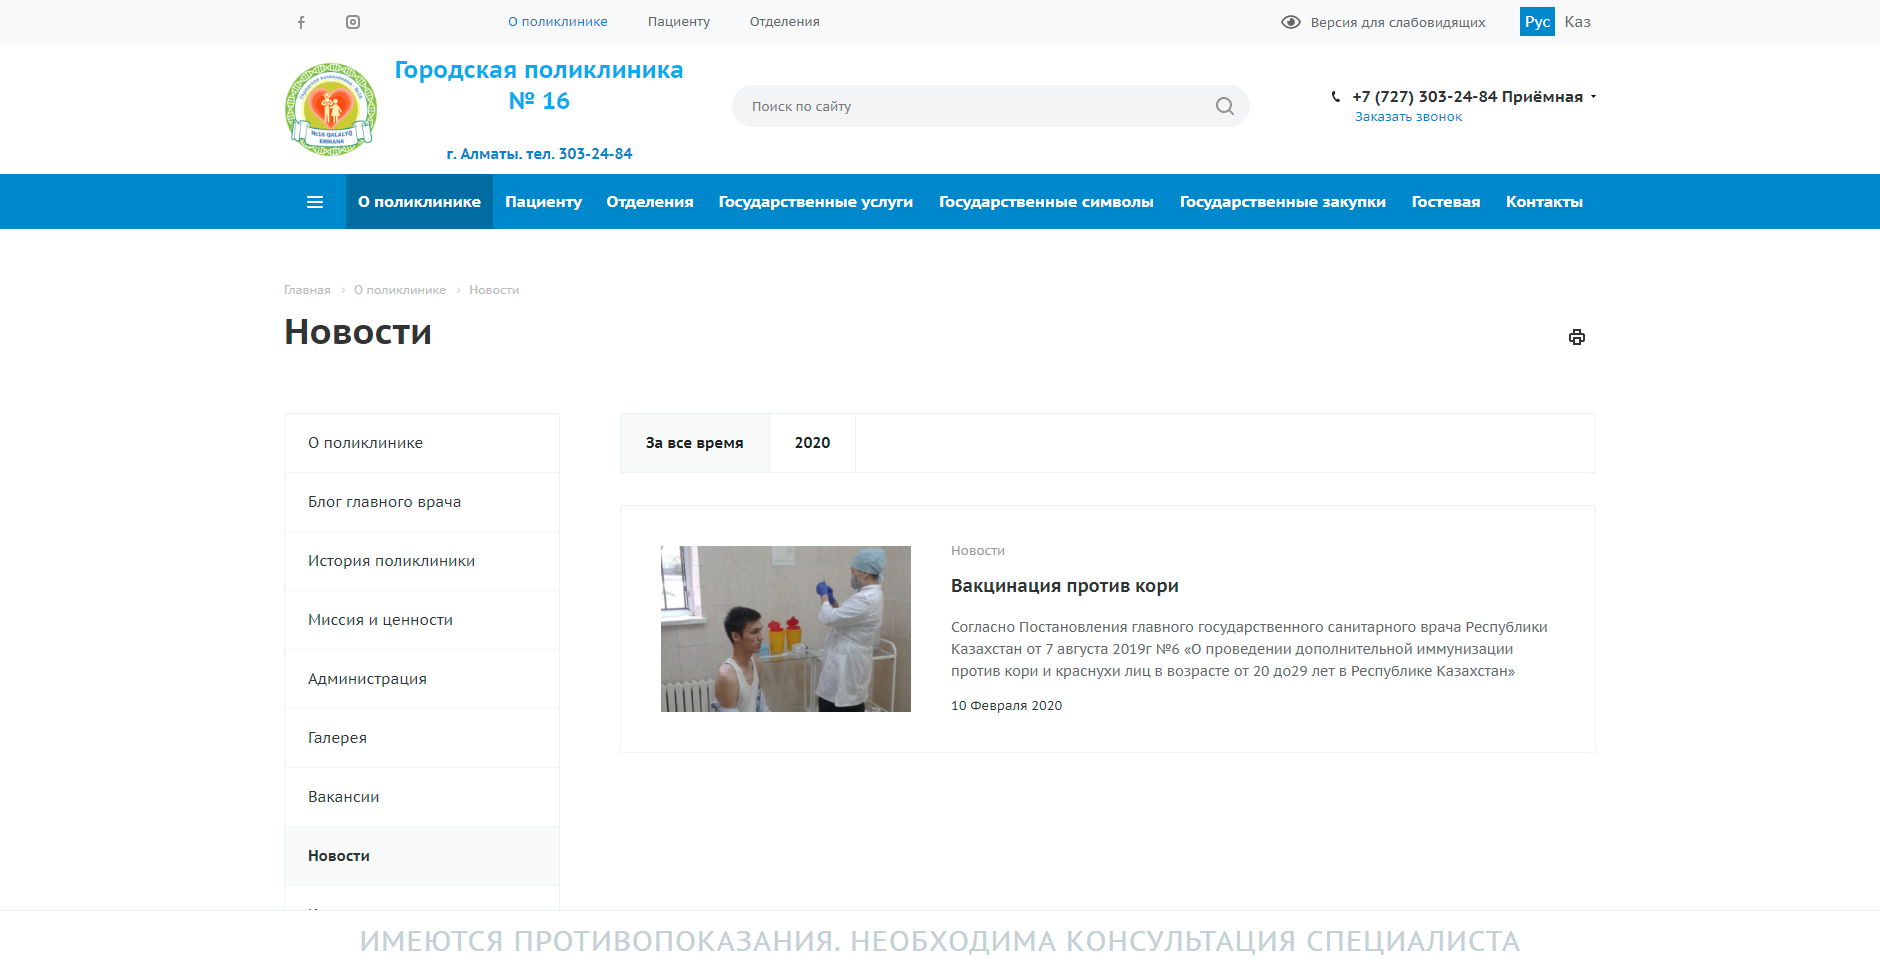 корпоративный сайт для городской поликлиники №16 города алматы